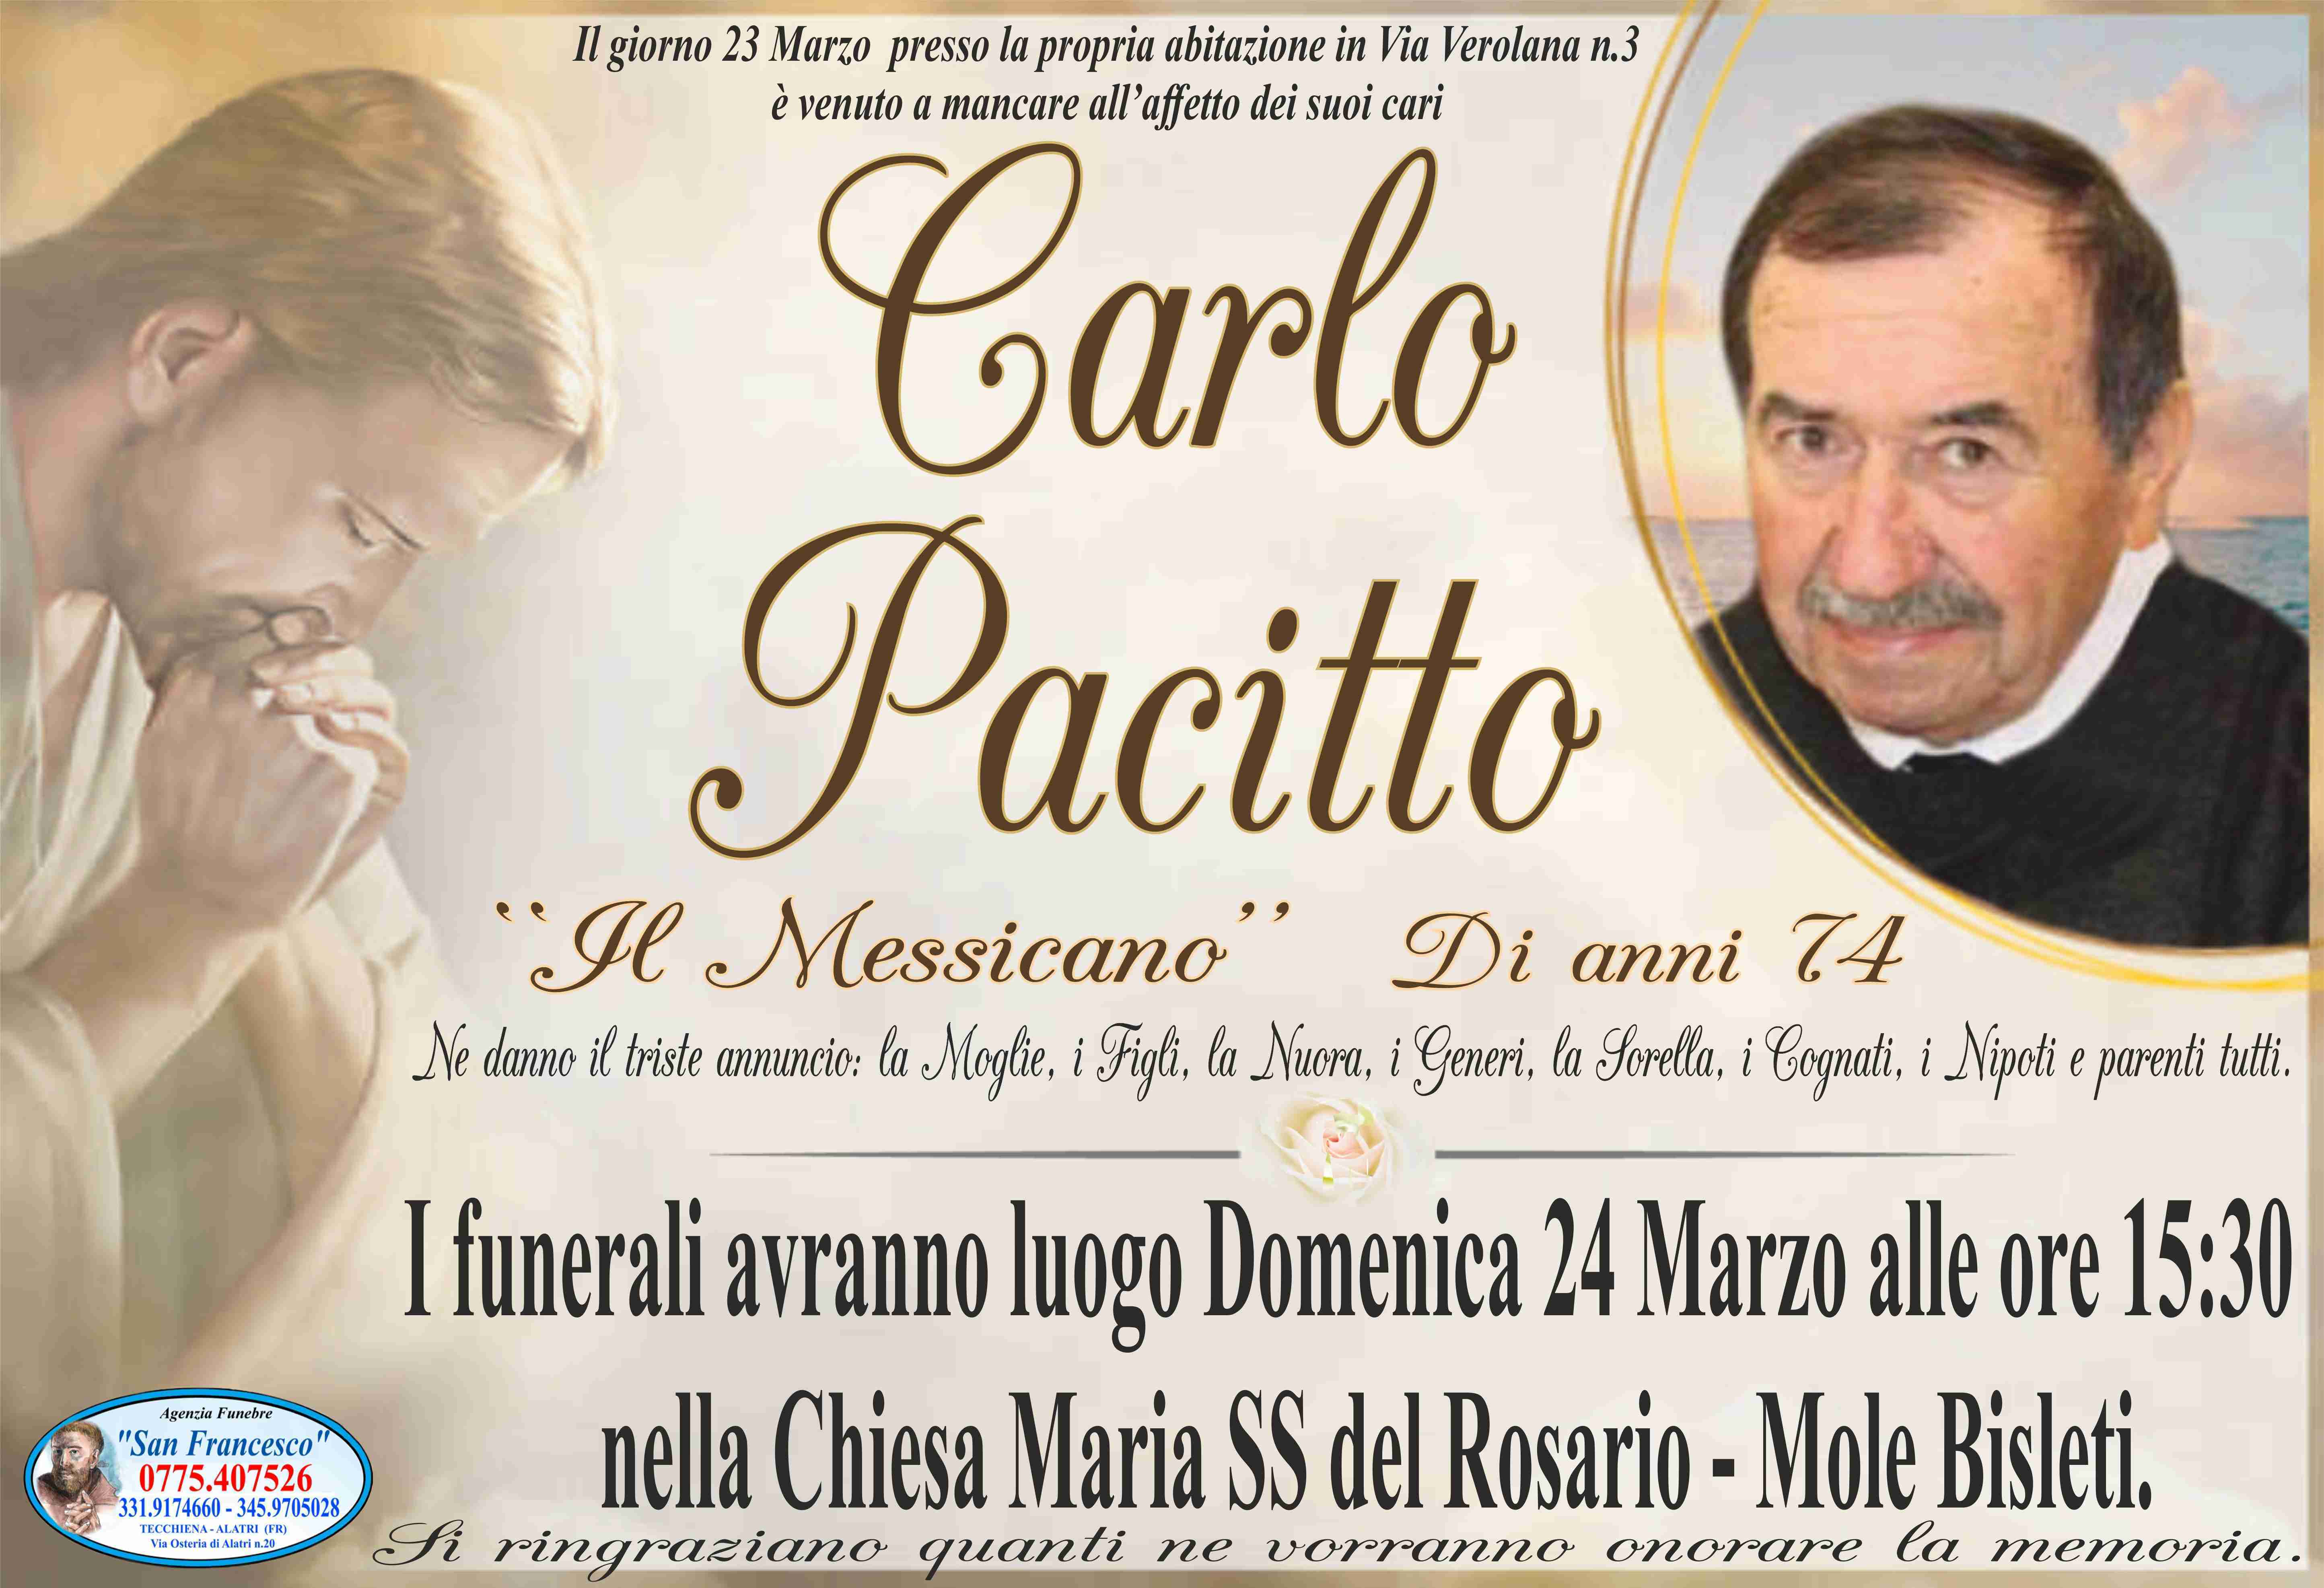 Carlo Pacitto '' Il Messicano''